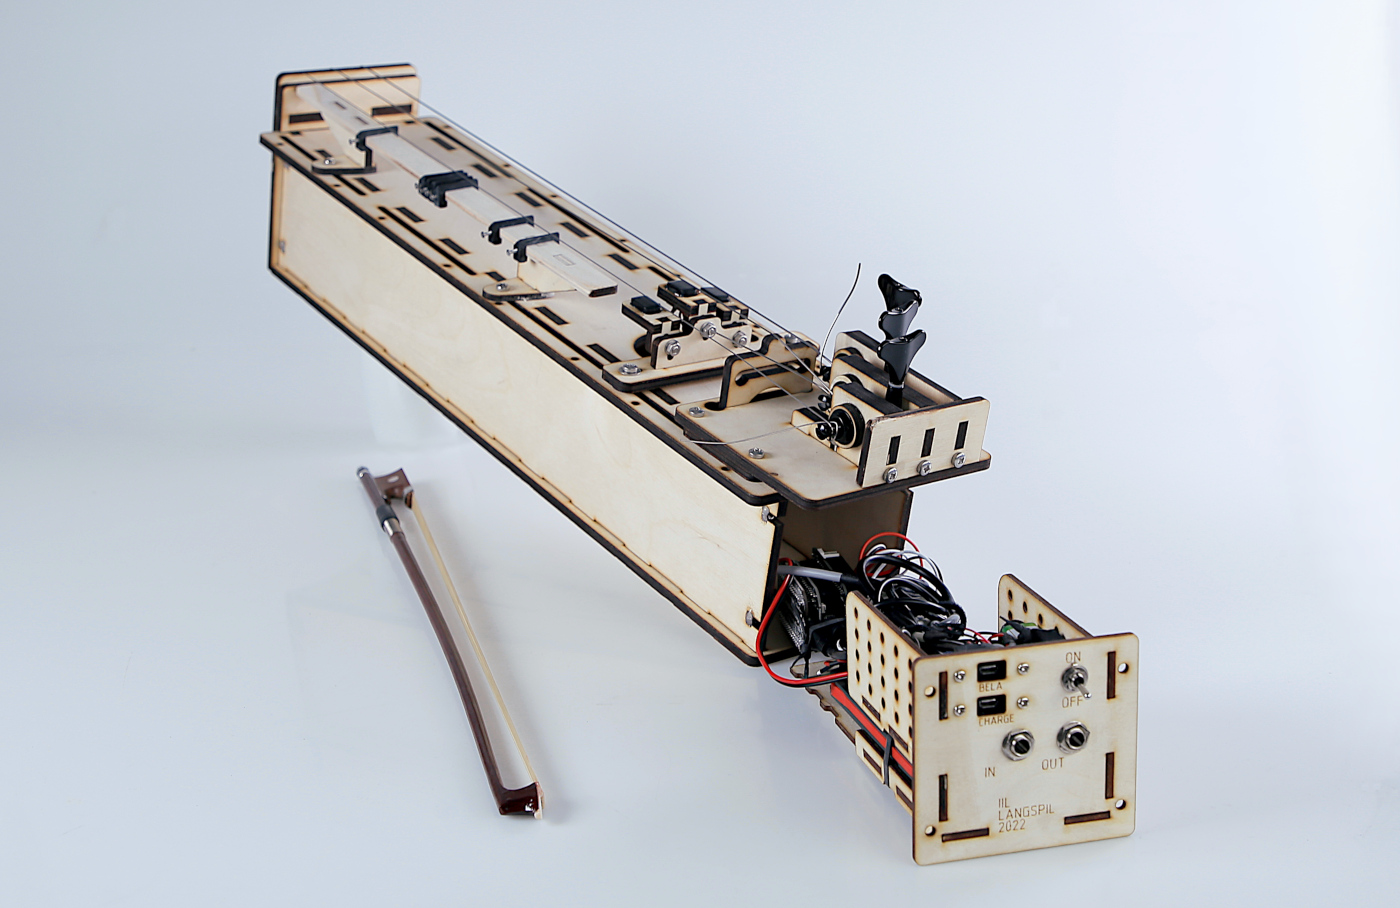 The proto-langspil digital musical instrument with Bela hardware platform inside.